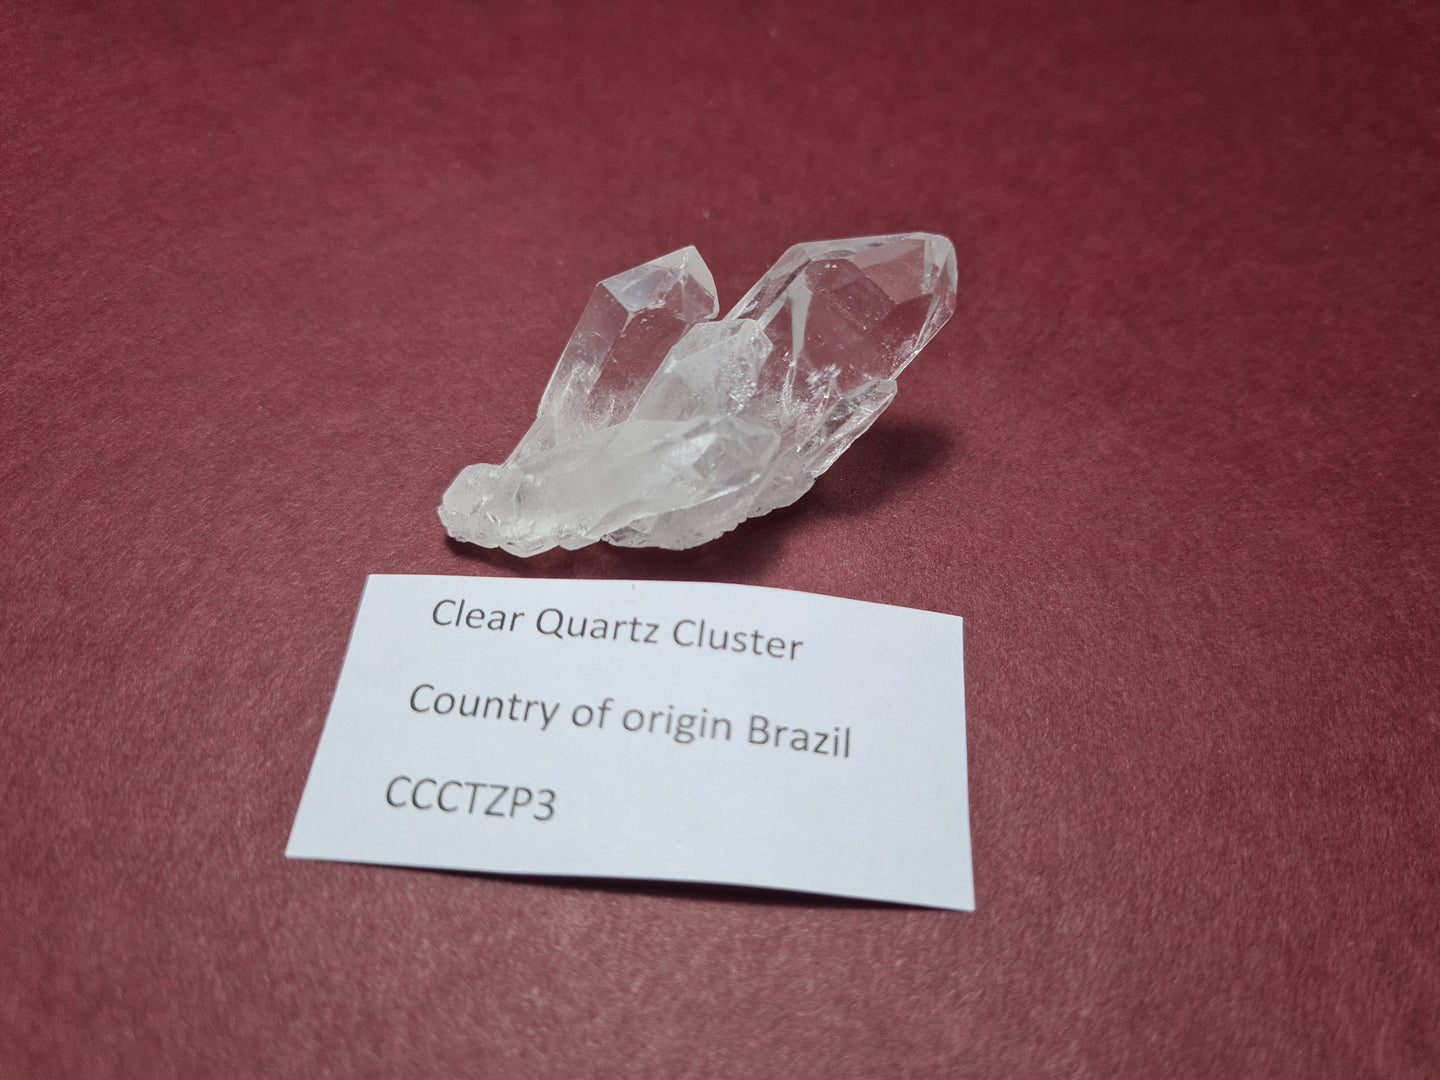 Clear Quartz cluster (3) Crystal Gem Stone